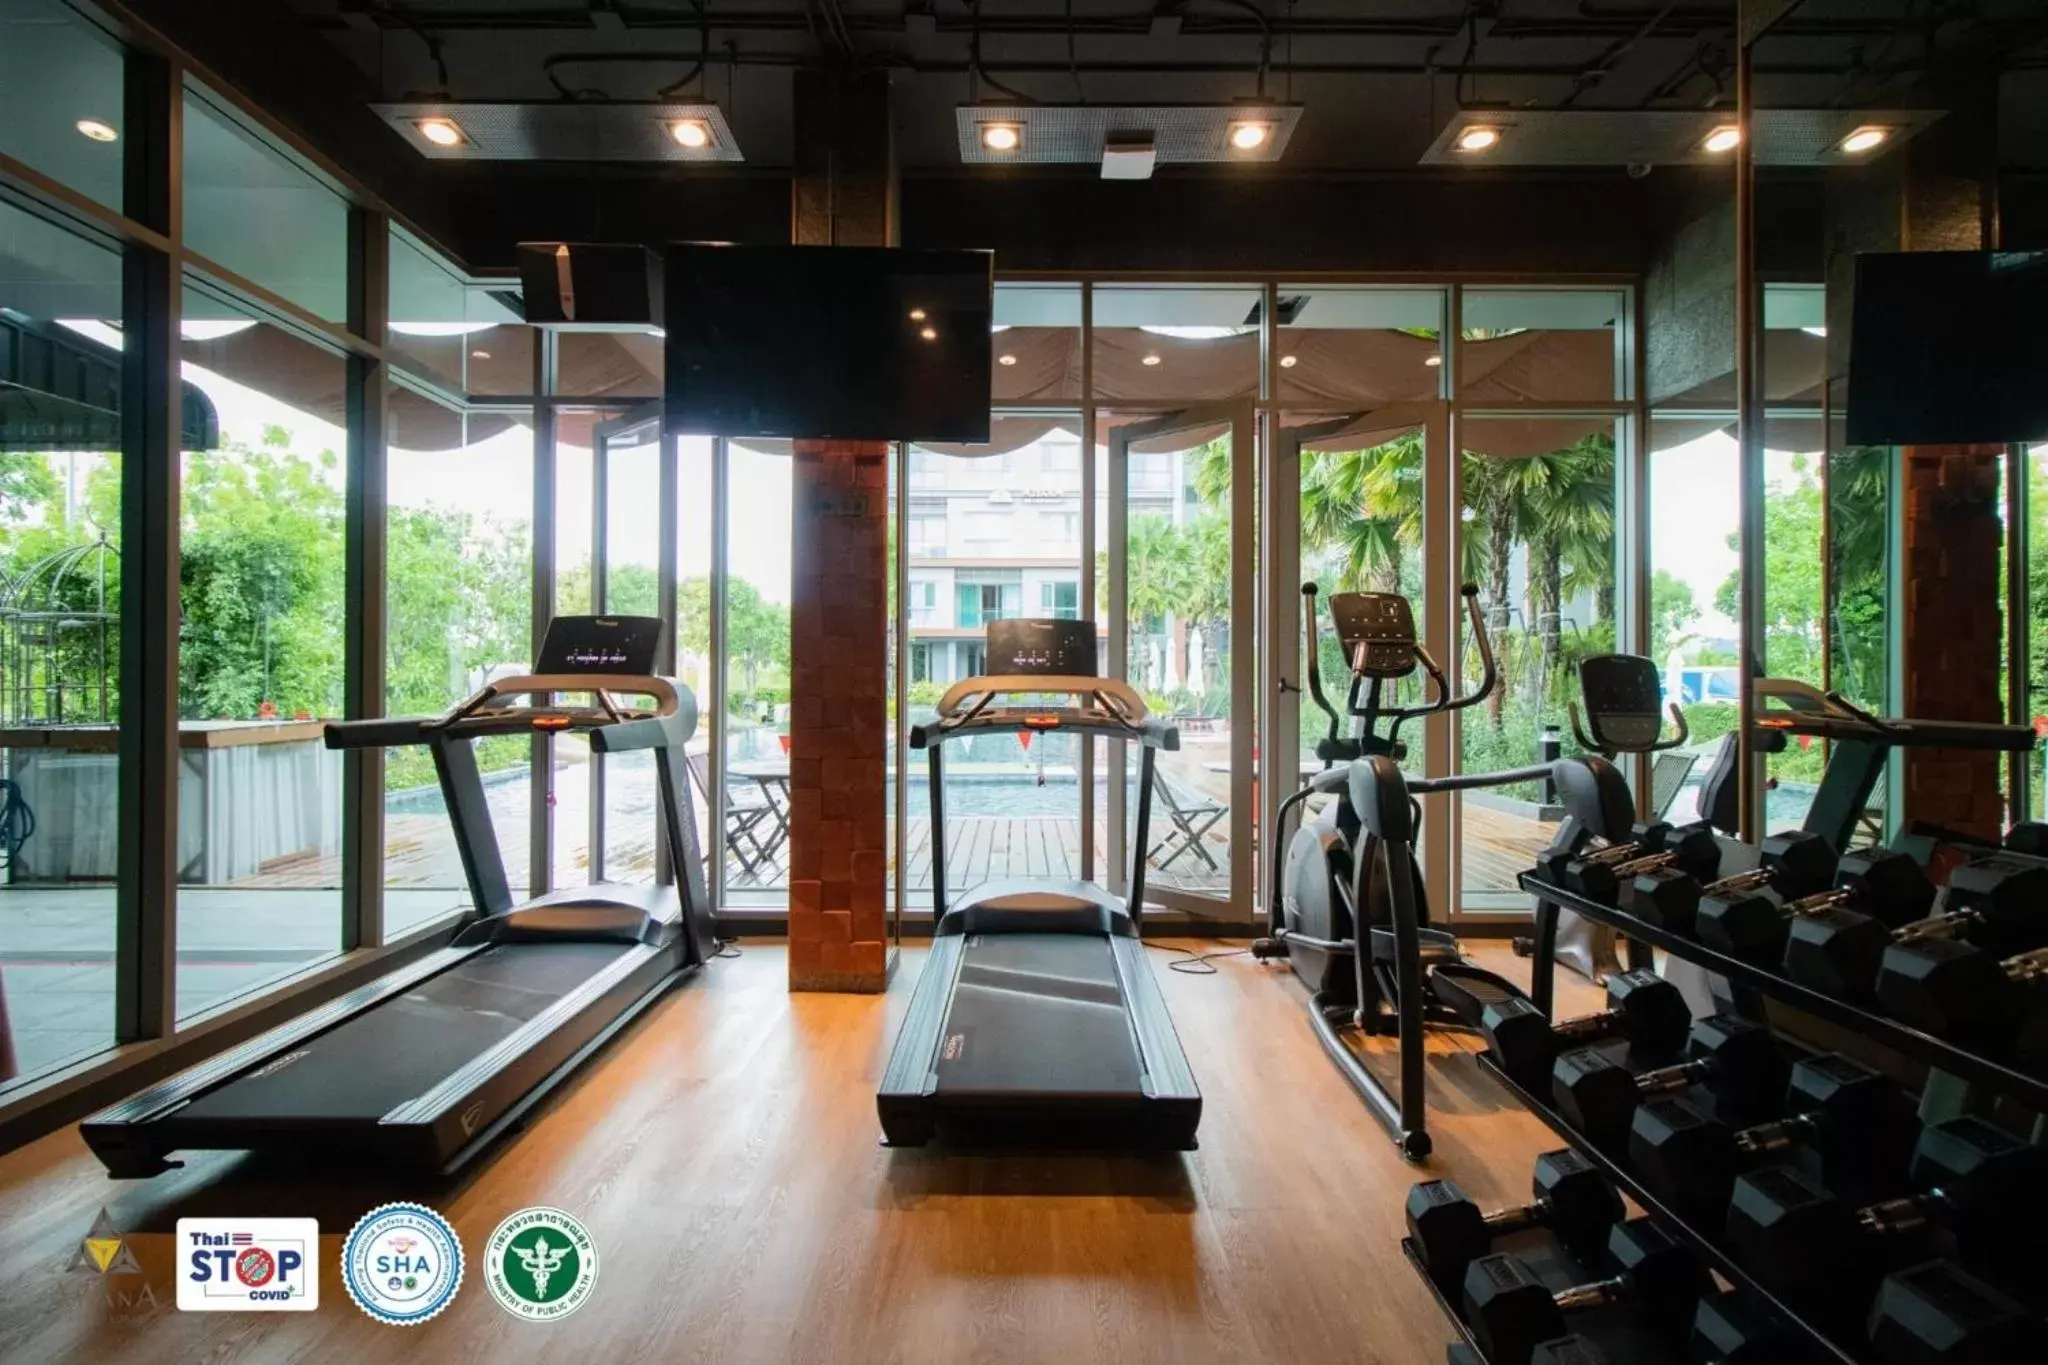 Fitness centre/facilities, Fitness Center/Facilities in Aisana Hotel Korat